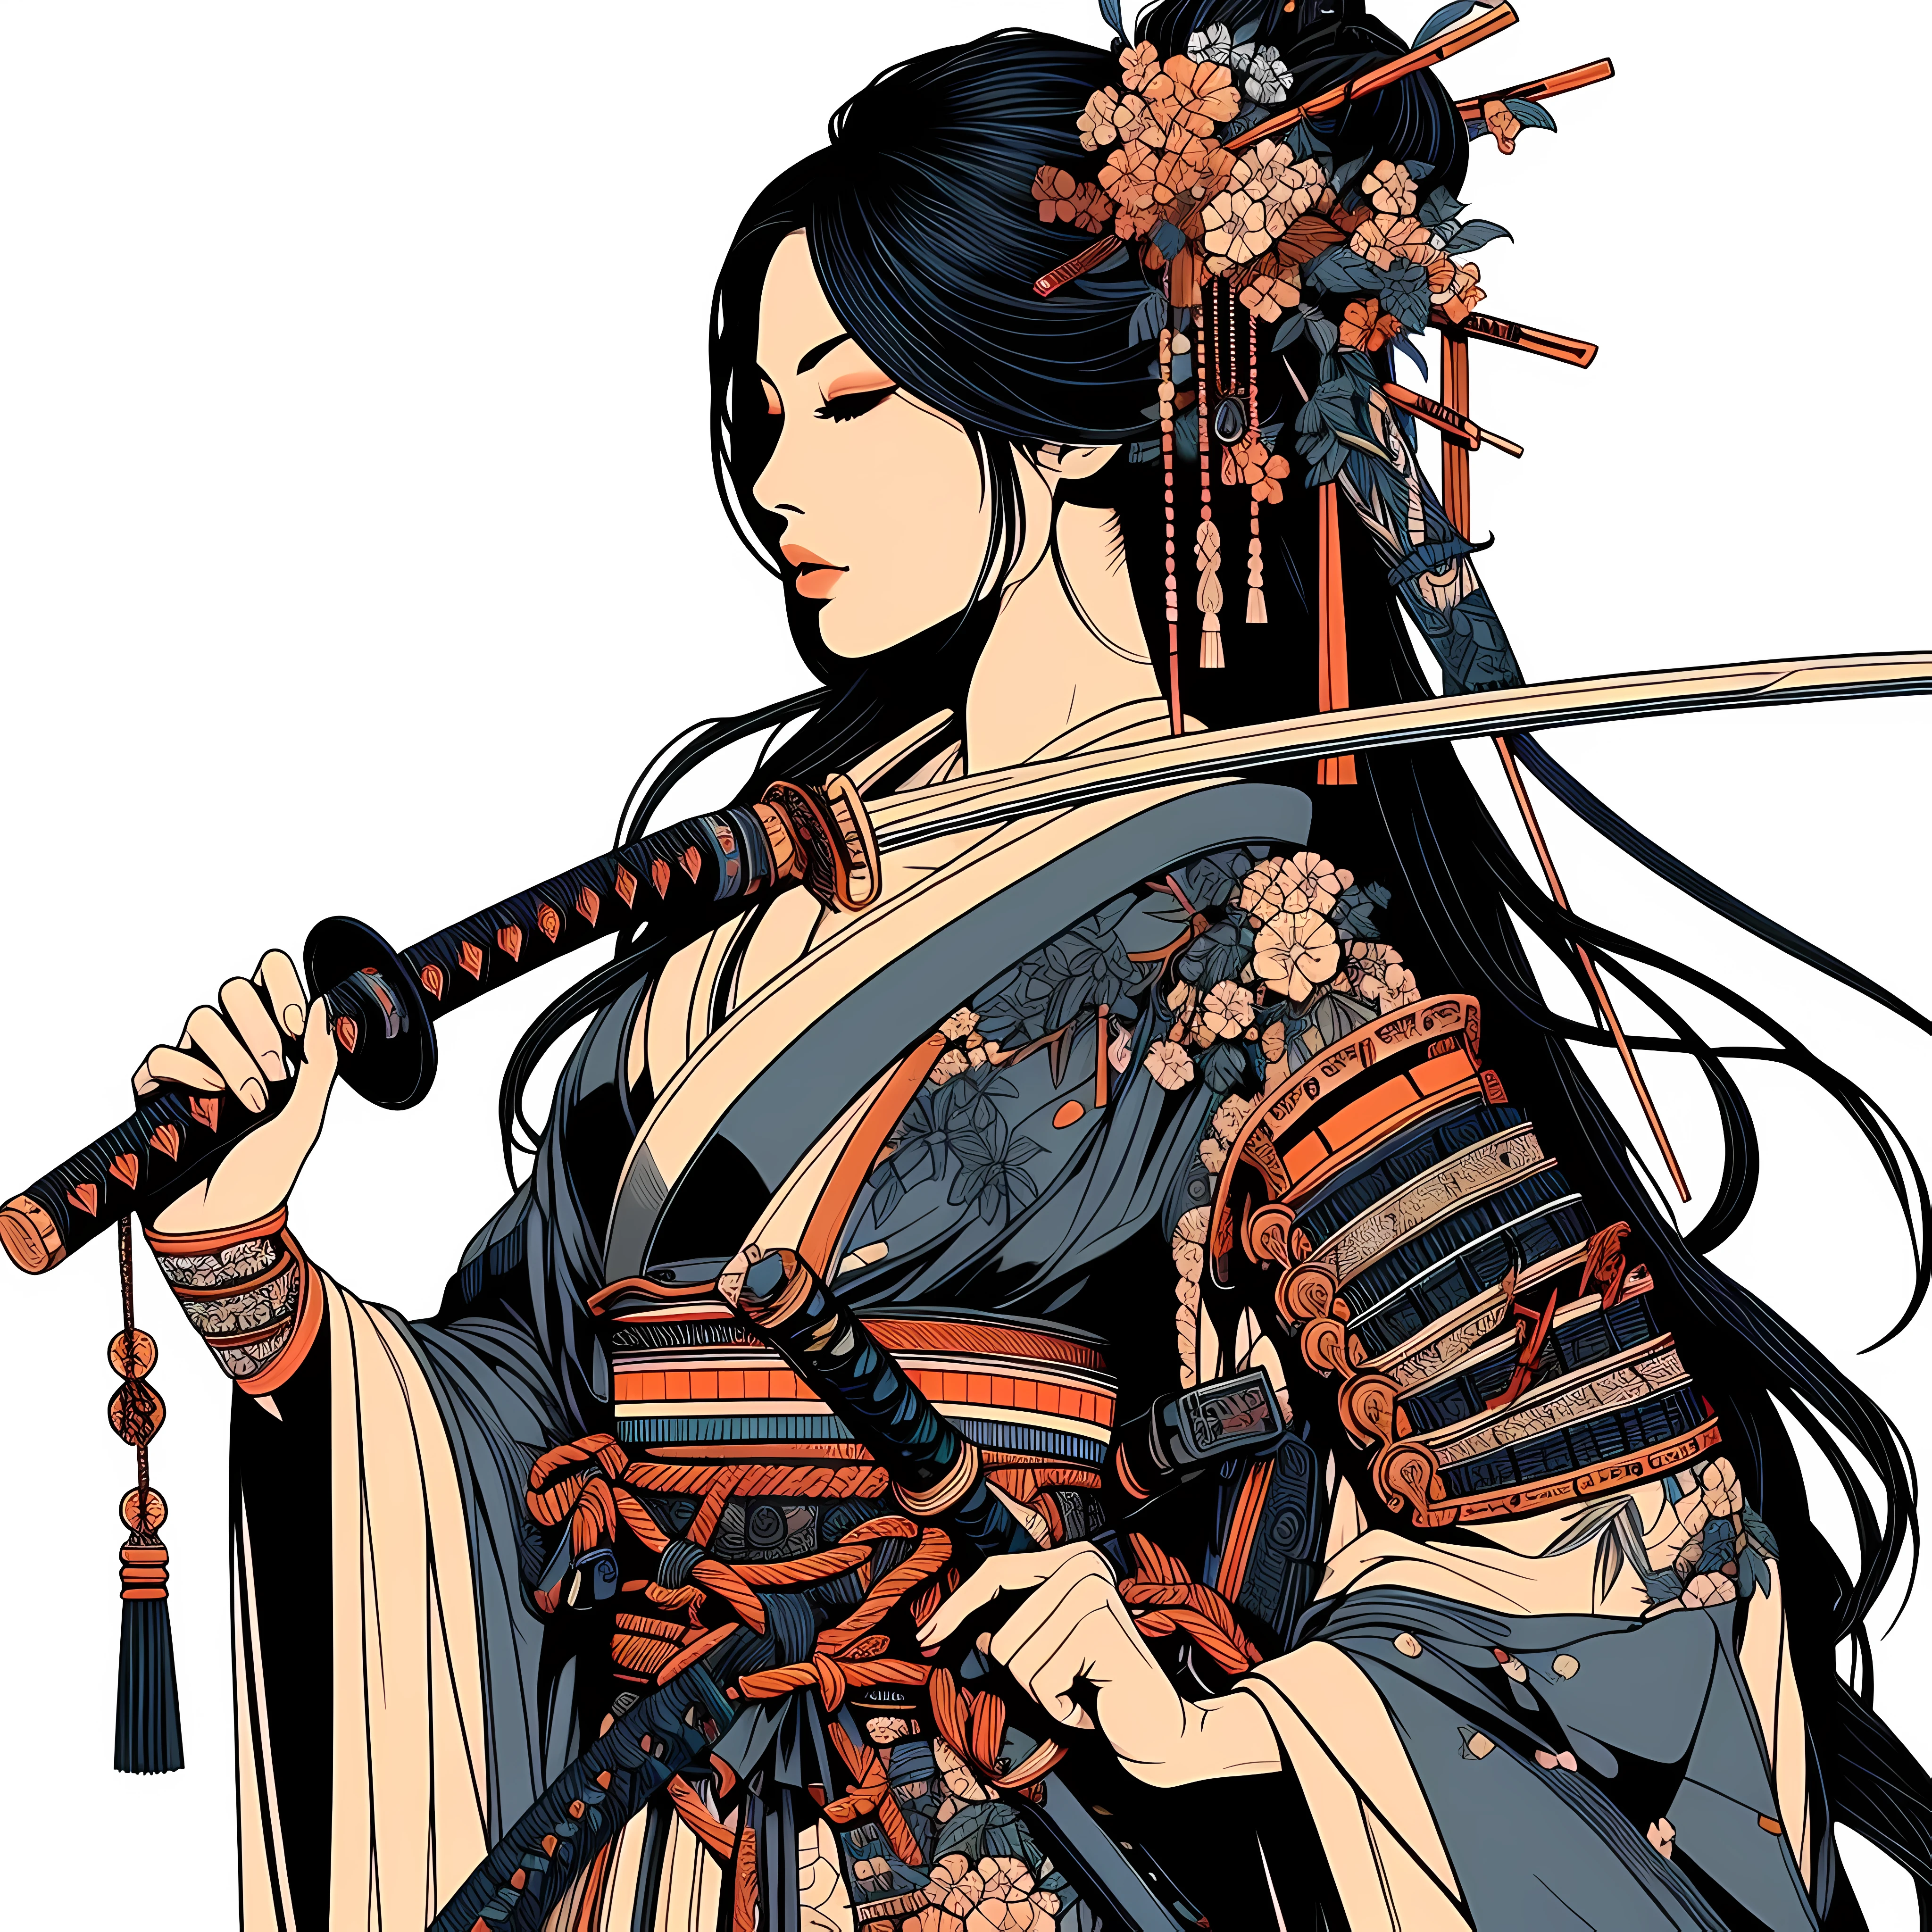 創建一個 (32k傑作, 最好的品質:1.4) 彩色線條藝術插圖: 一位美麗的日本女武士, 她是權力和歷史優雅的縮影, 同時散發出無敵的氣場與魅力